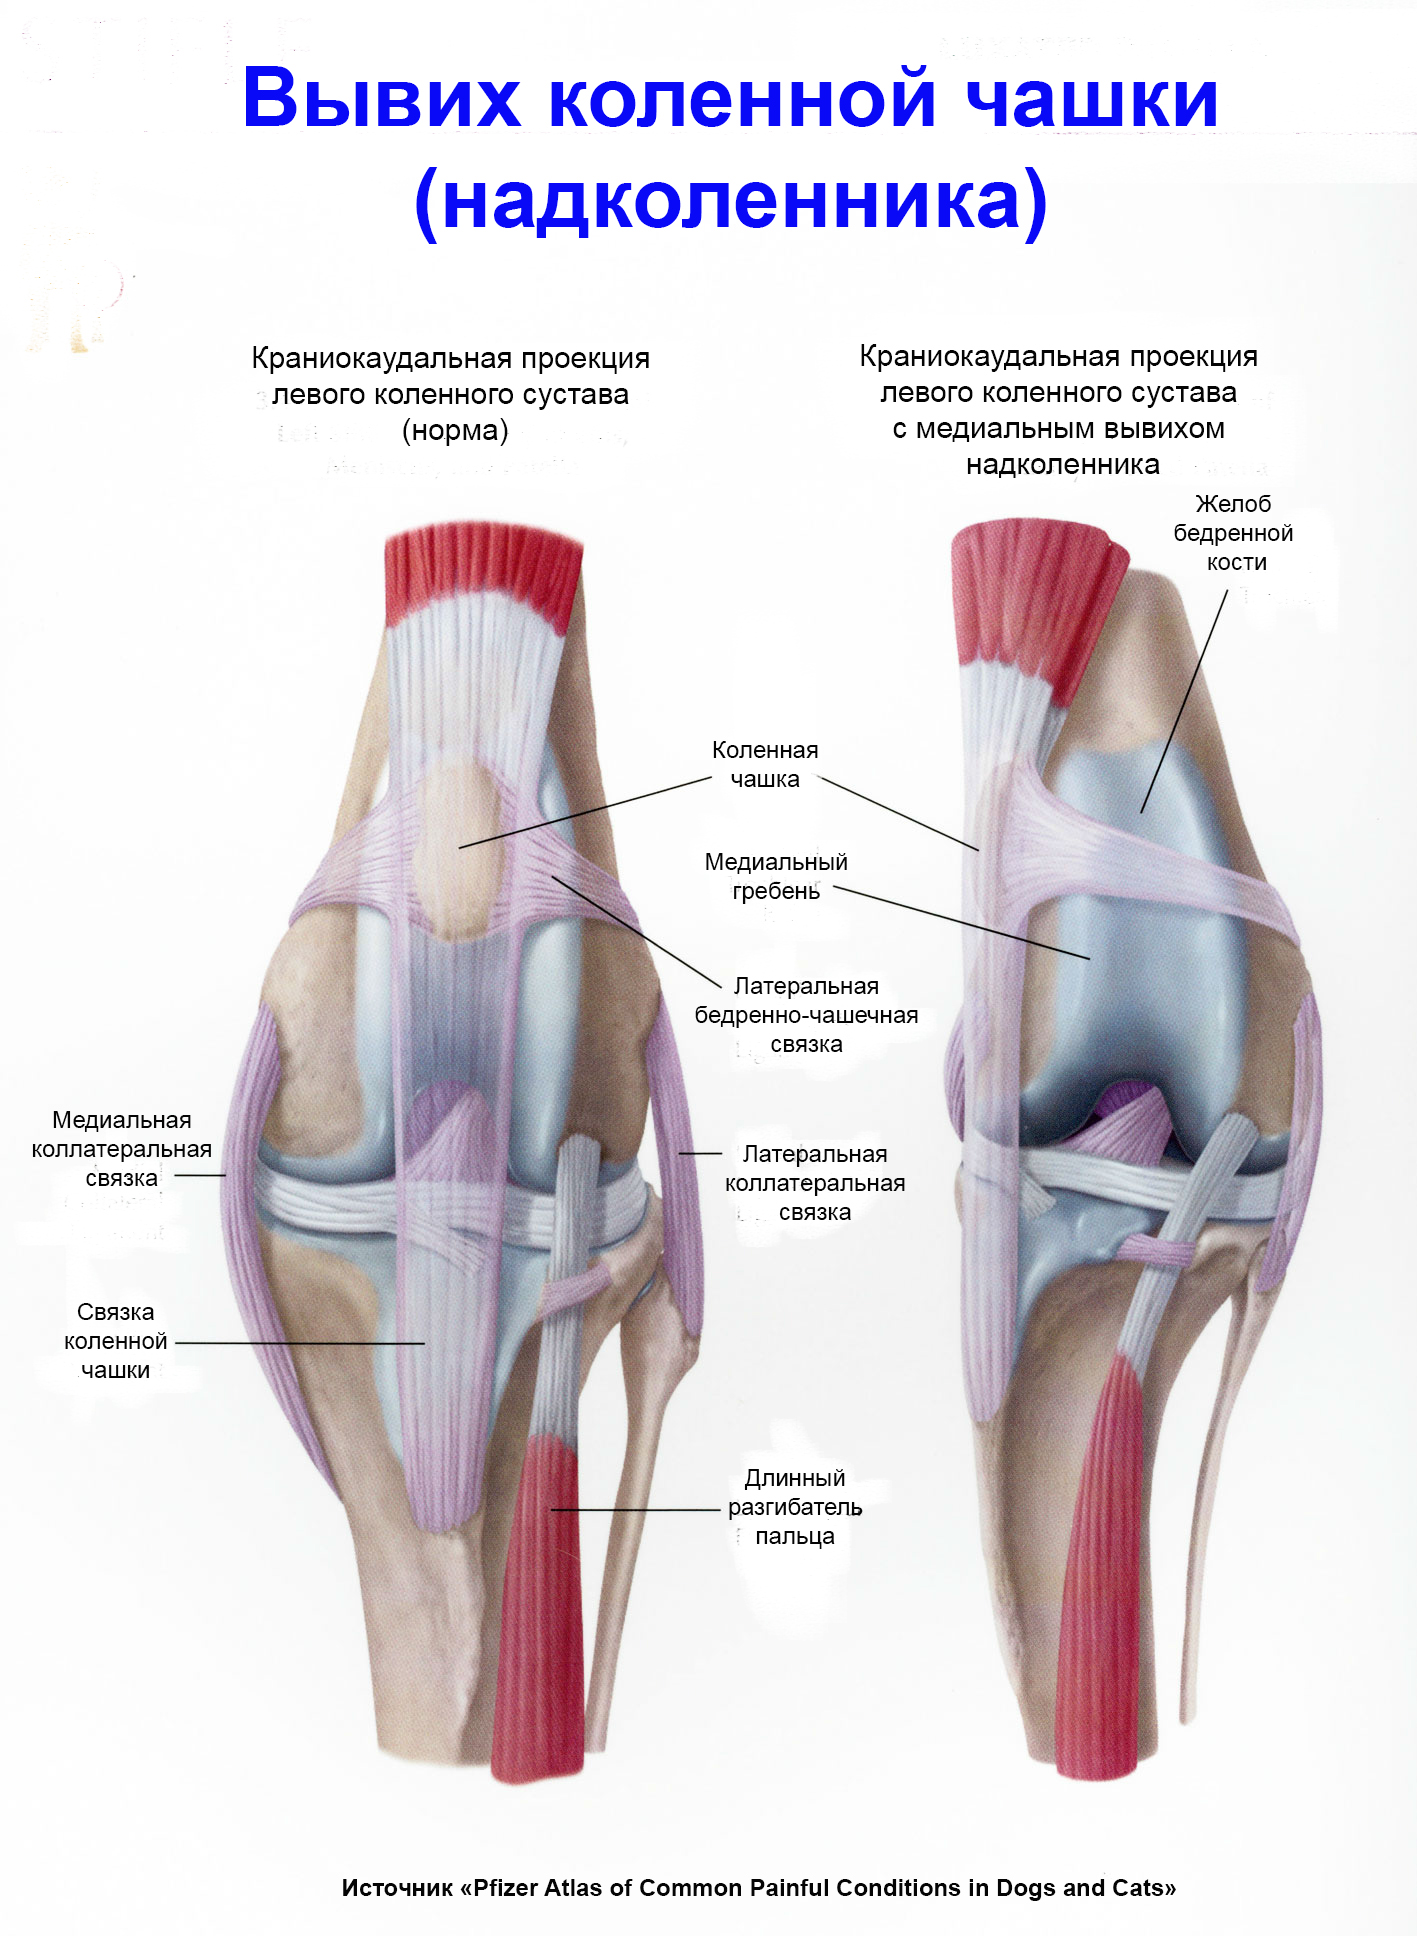 Вывих коленного сустава: симптомы, методы лечения и реабилитации